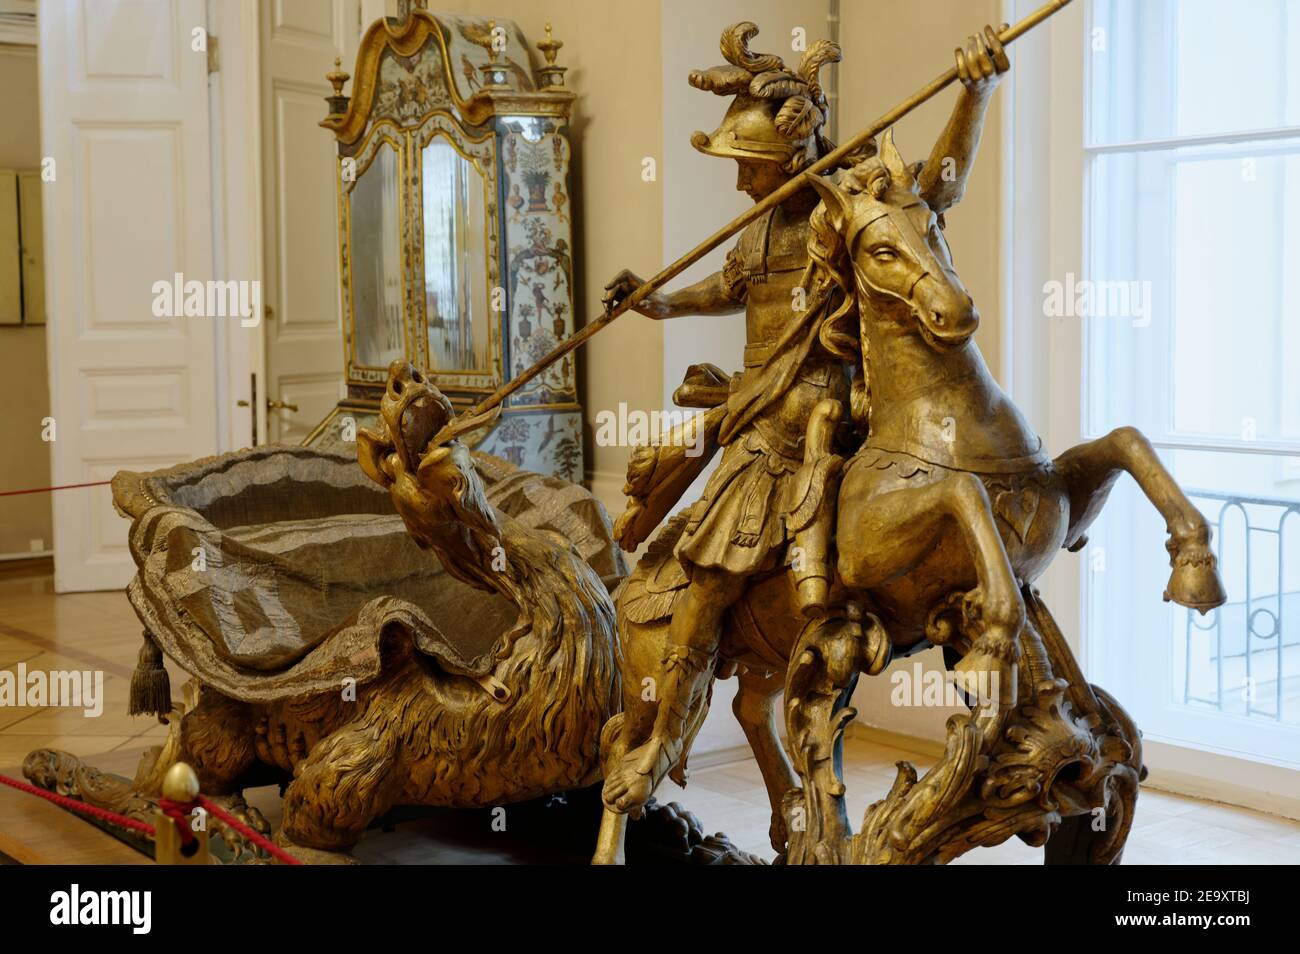 Slitta di Carnevale con la Figurina di San Giorgio nella mostra della cultura russa del 18 ° secolo nel Palazzo d'Inverno, il museo di Stato Hermitage, San Pietroburgo, Russia Foto Stock